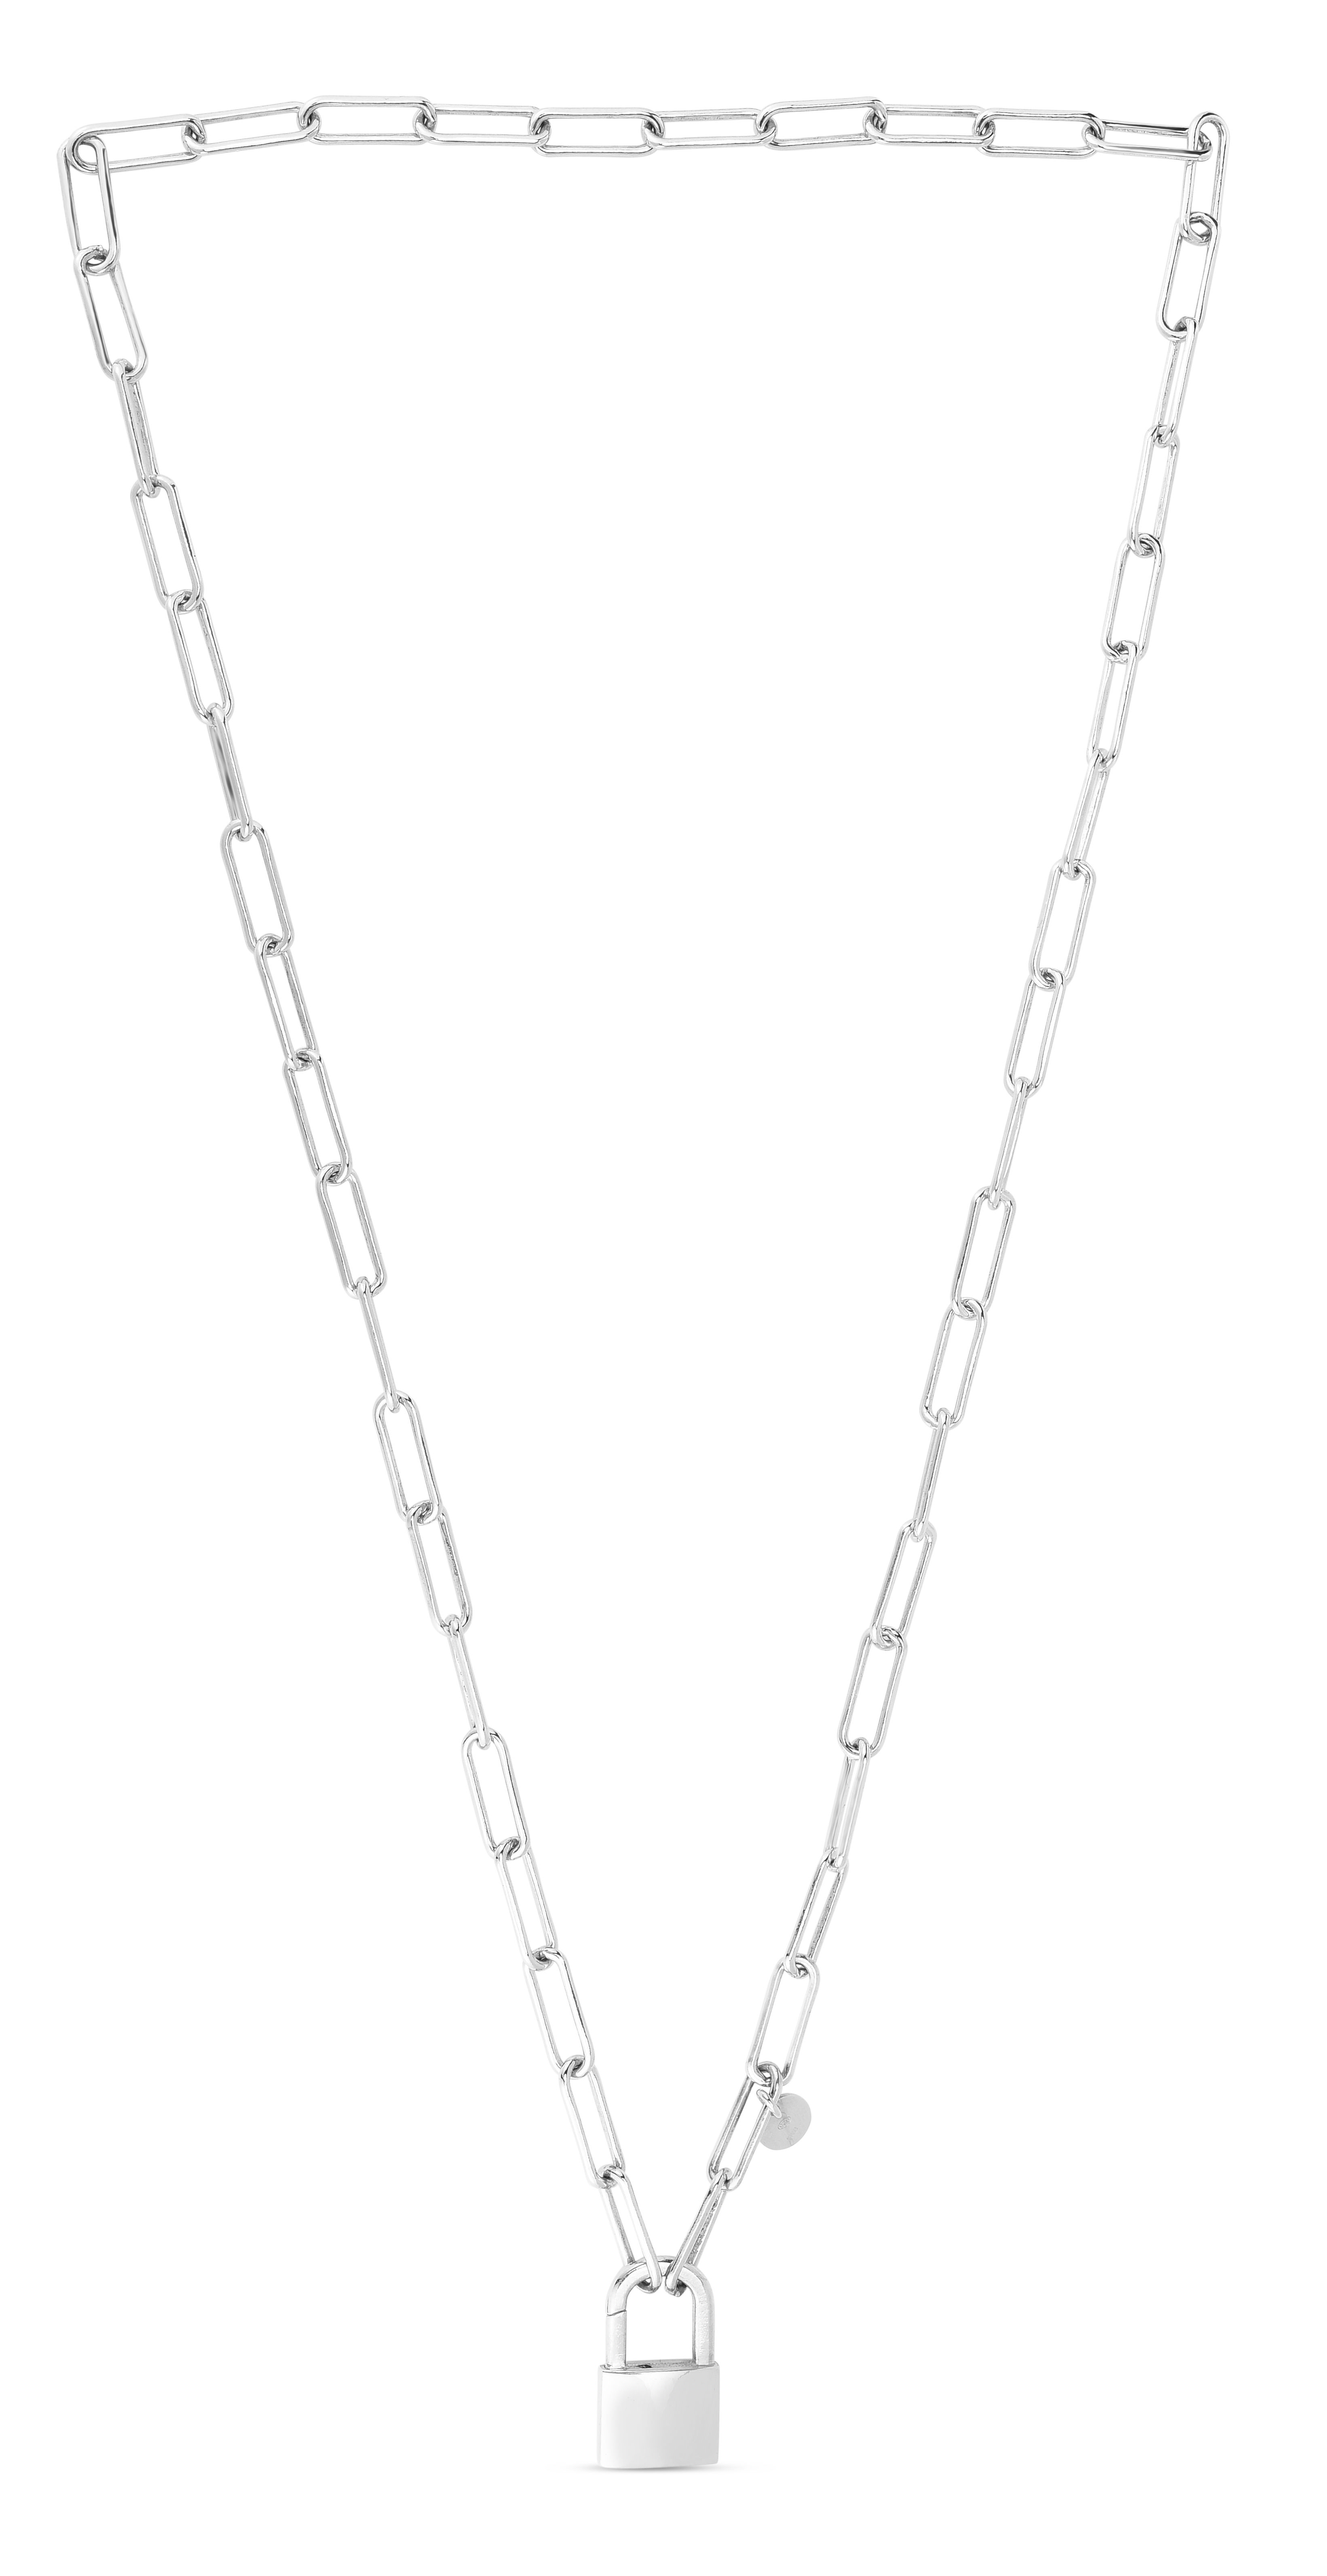 Silver Lock Link Necklace